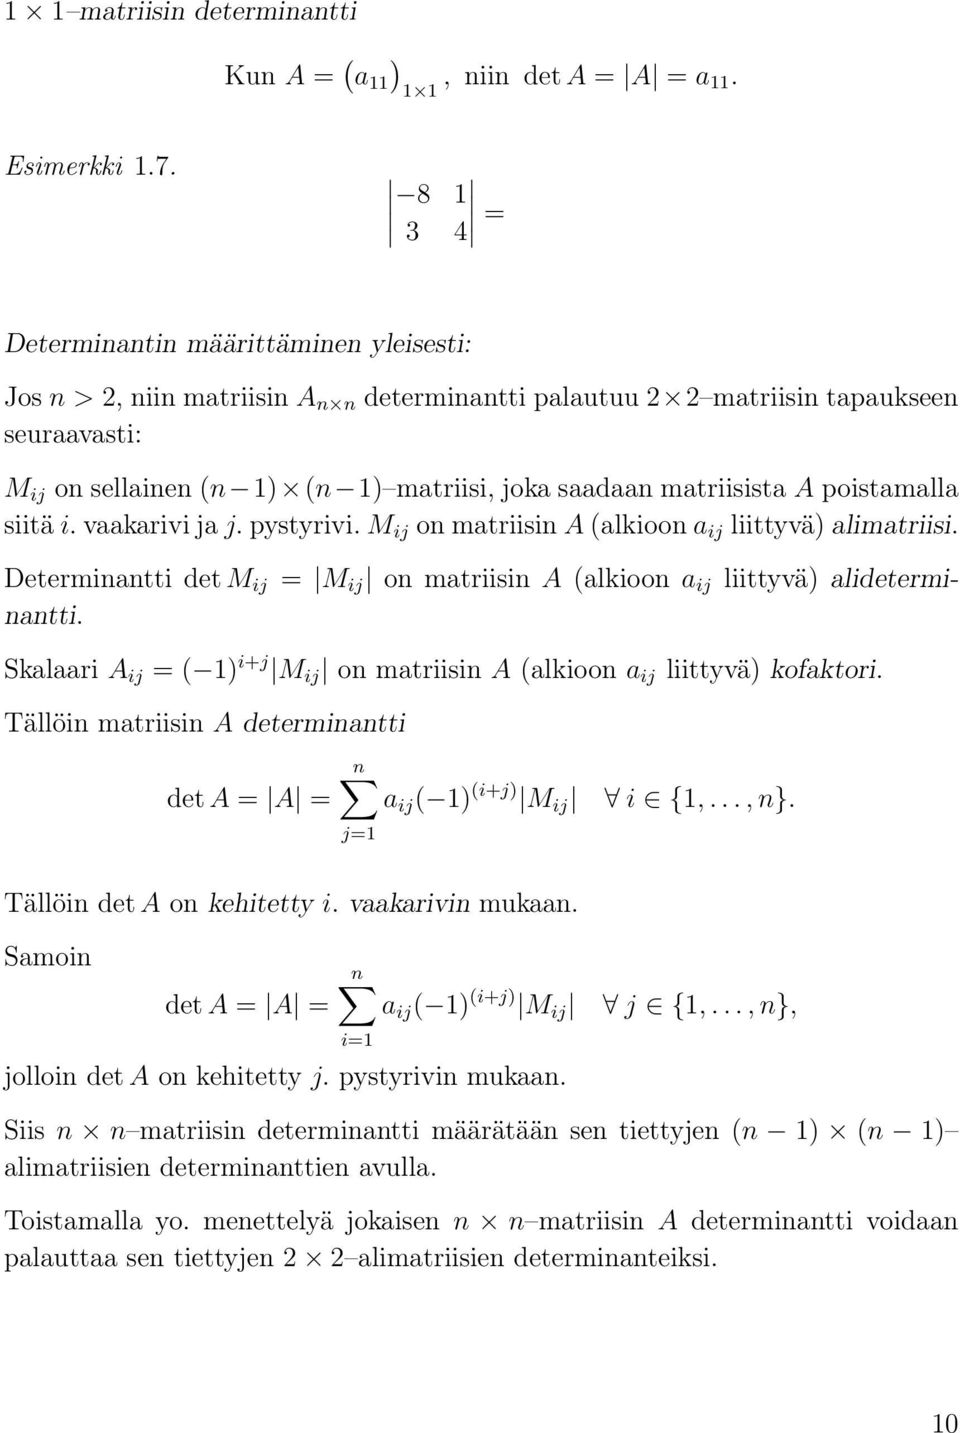 lidetermi- Determinntti det M ij nntti Sklri A ij = ( 1) i+j M ij on mtriisin A (lkioon ij liittyvä) kofktori Tällöin mtriisin A determinntti n det A = A = ij ( 1) (i+j) M ij j=1 i {1,, n} Tällöin